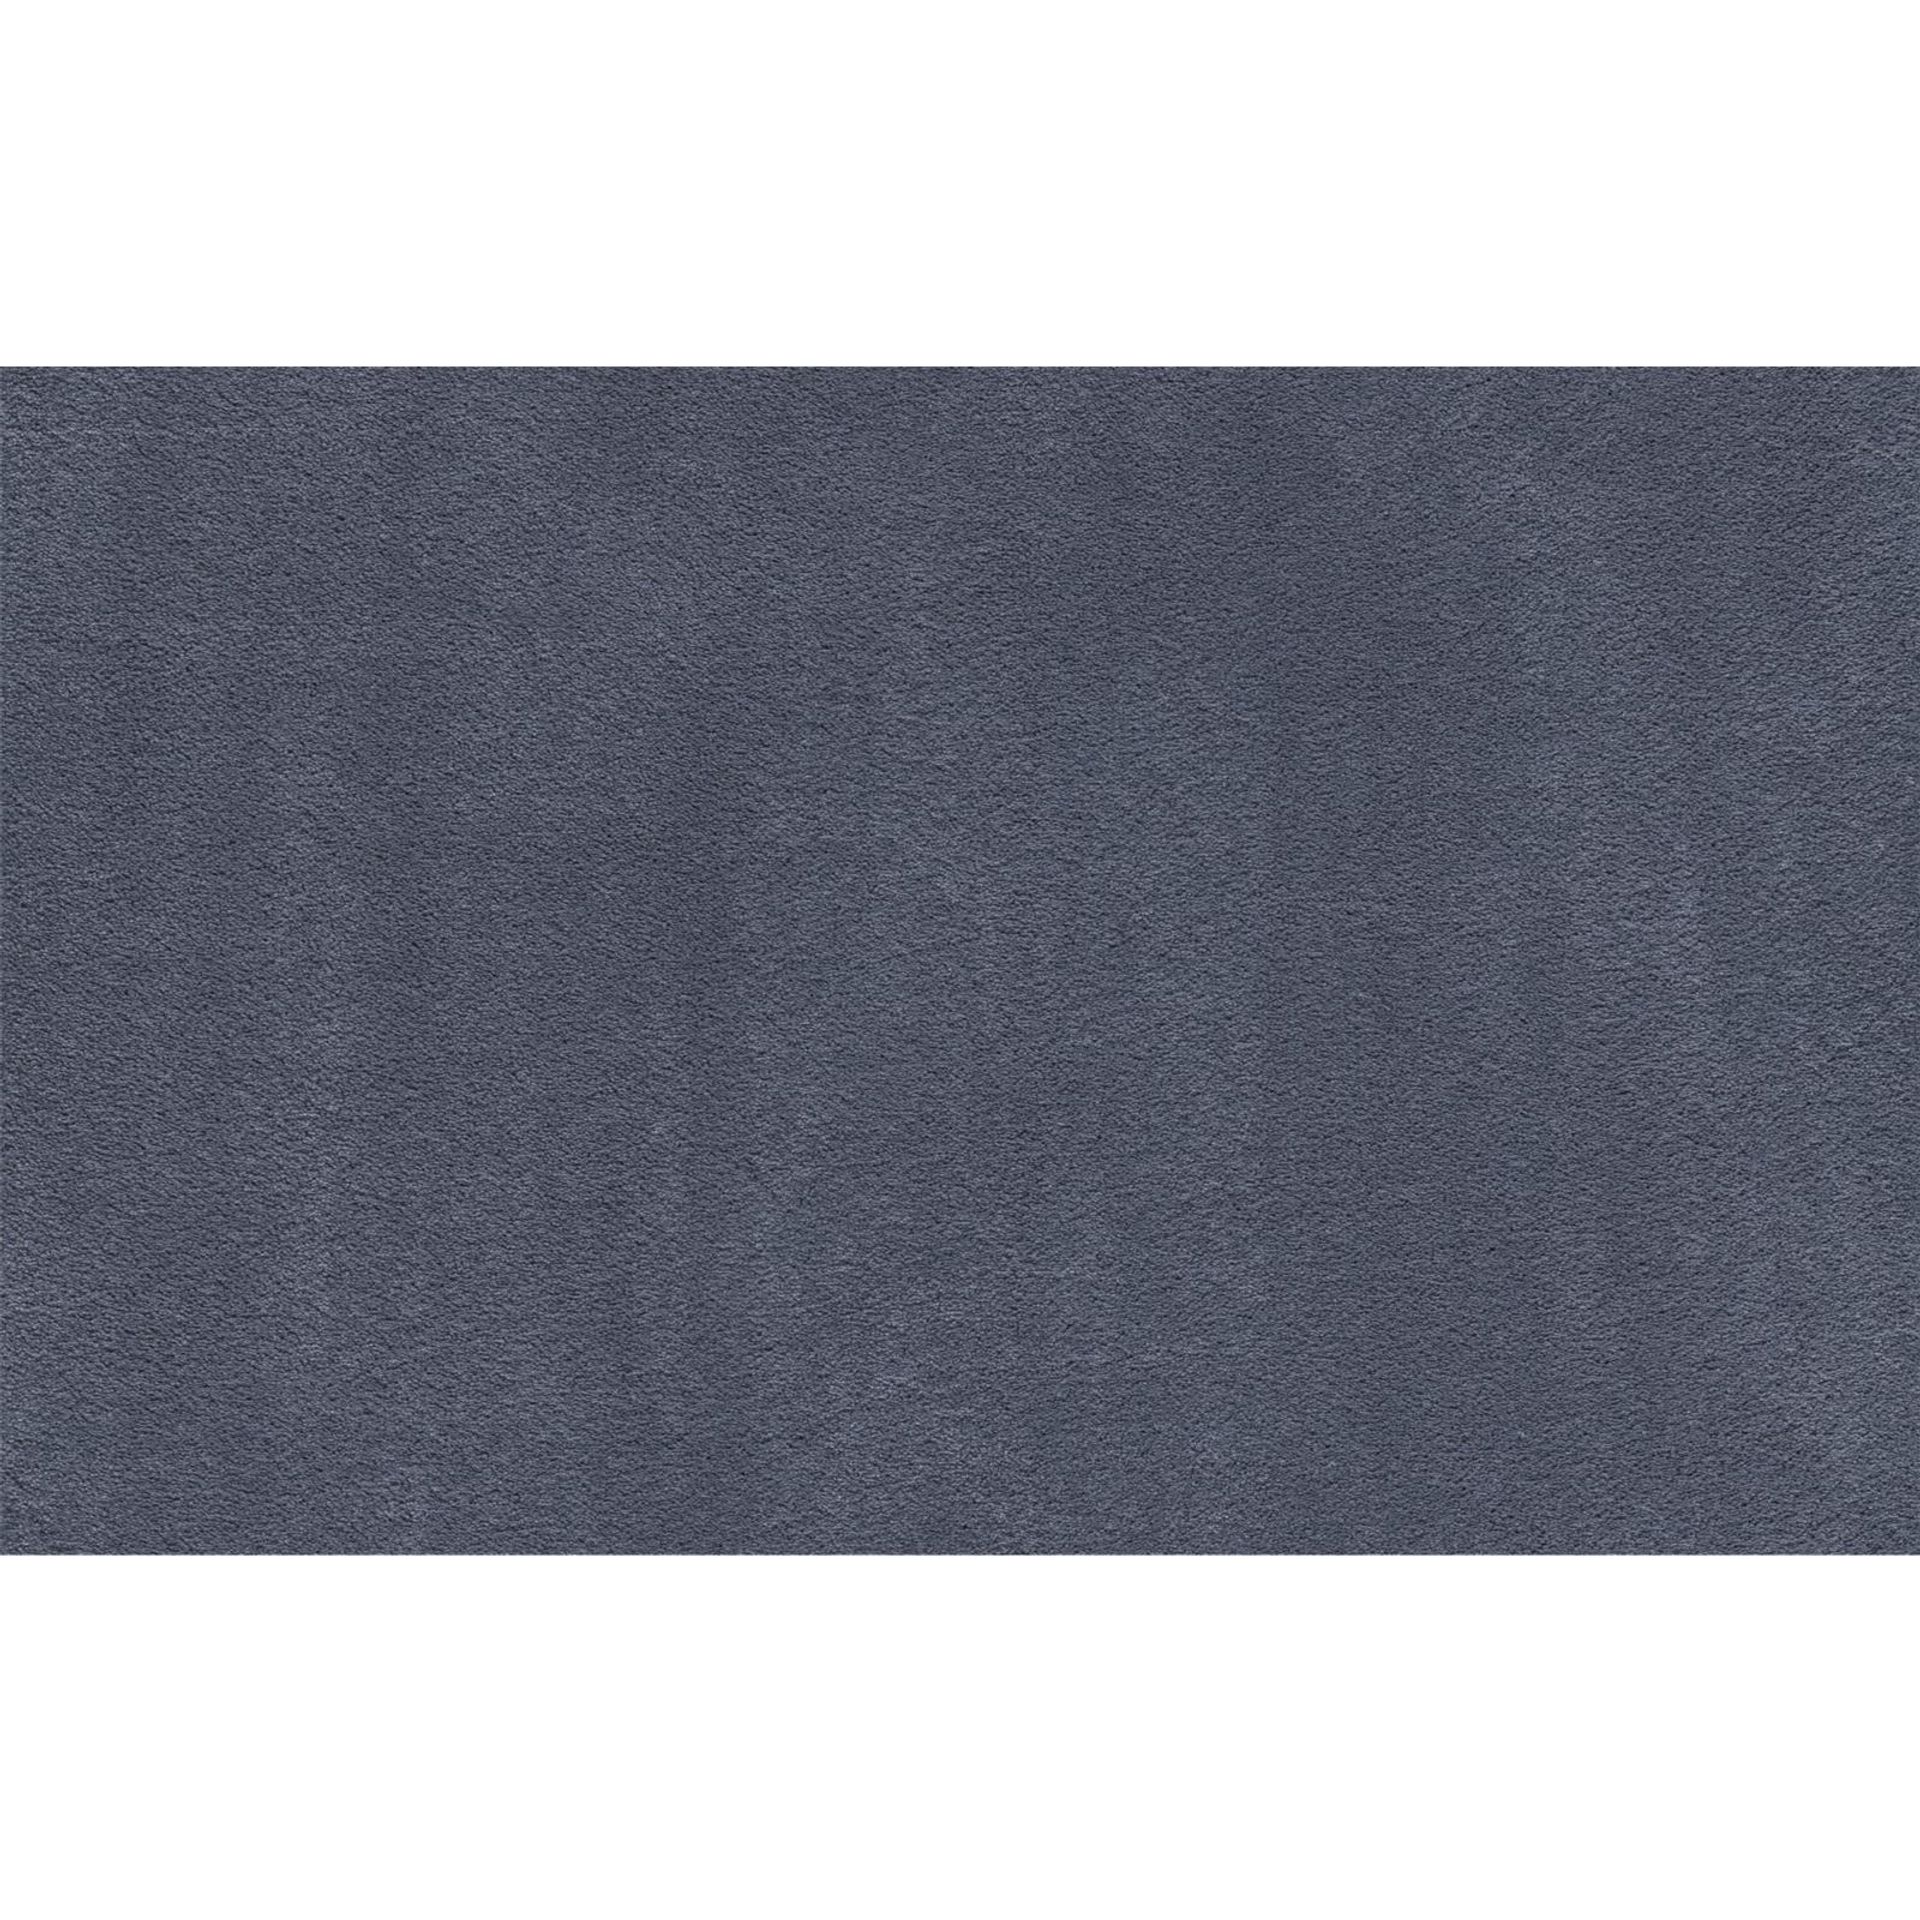 Teppichboden Vorwerk Superior 1067 MIRA Hochflor Blau 3Q76 - Rollenbreite 500 cm